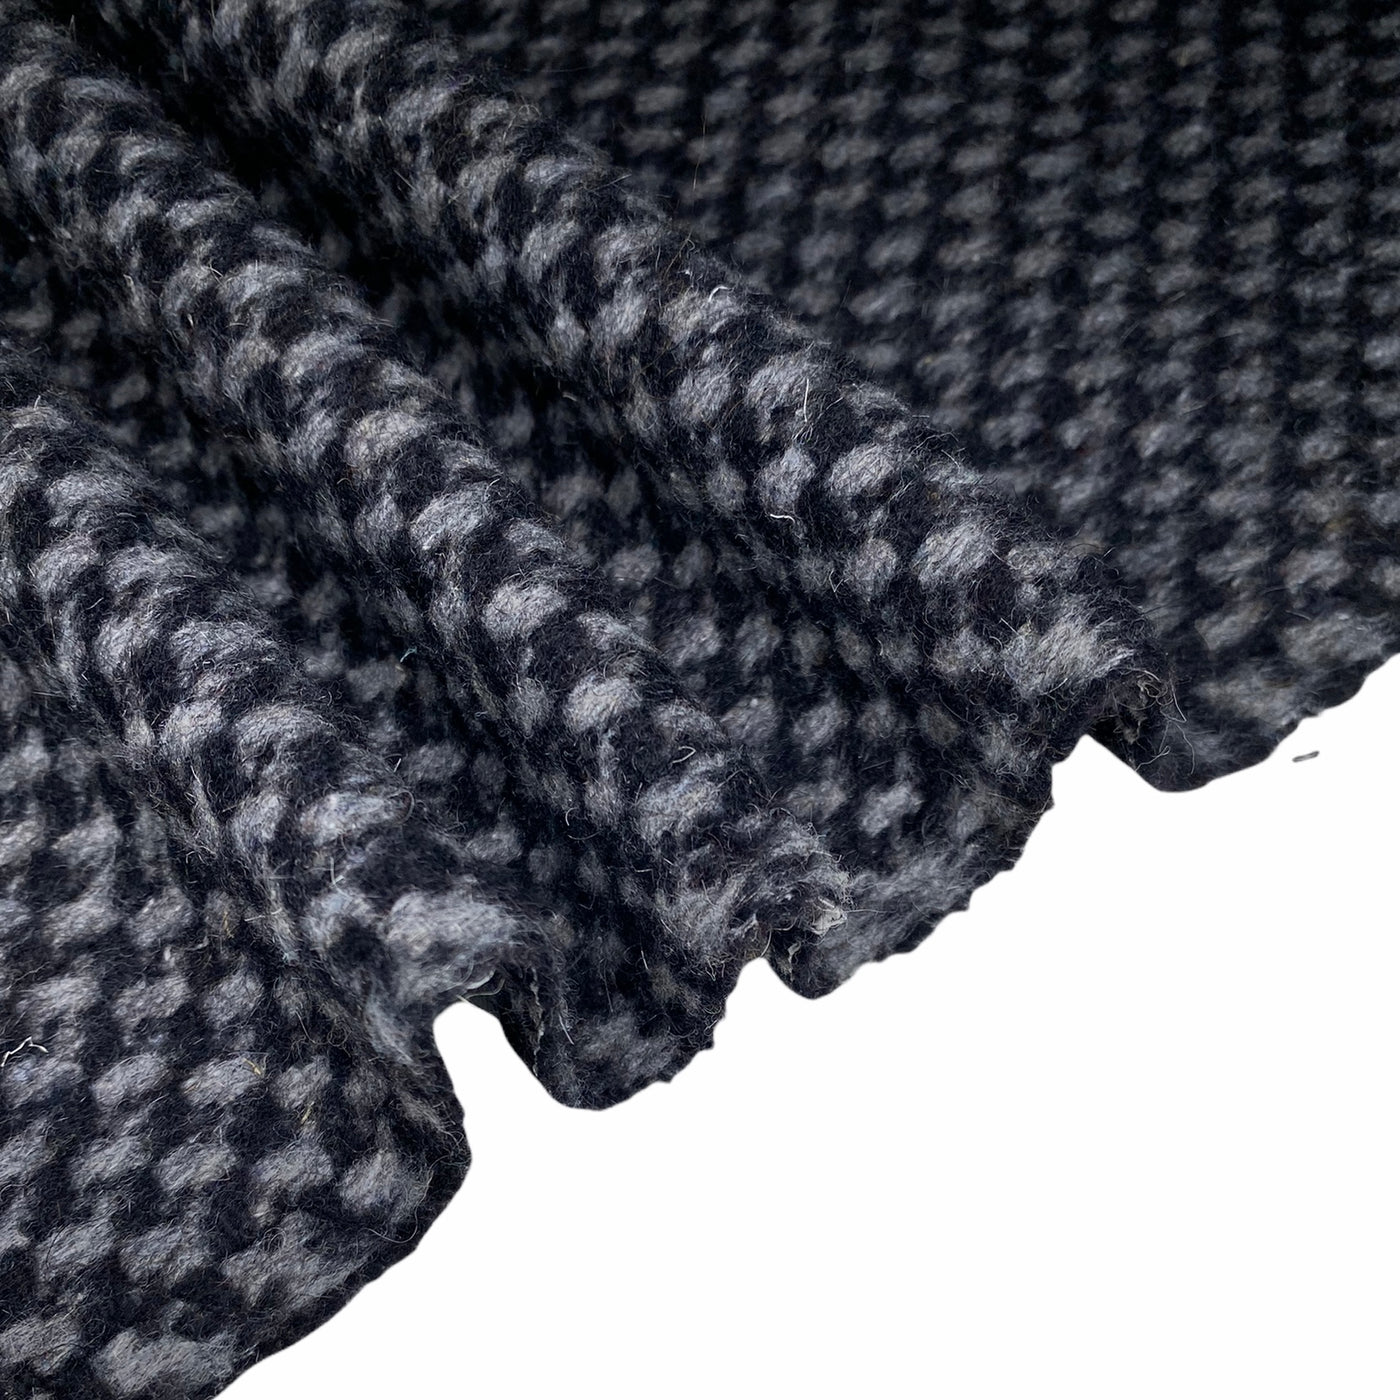 Wool Coating - Black/Grey